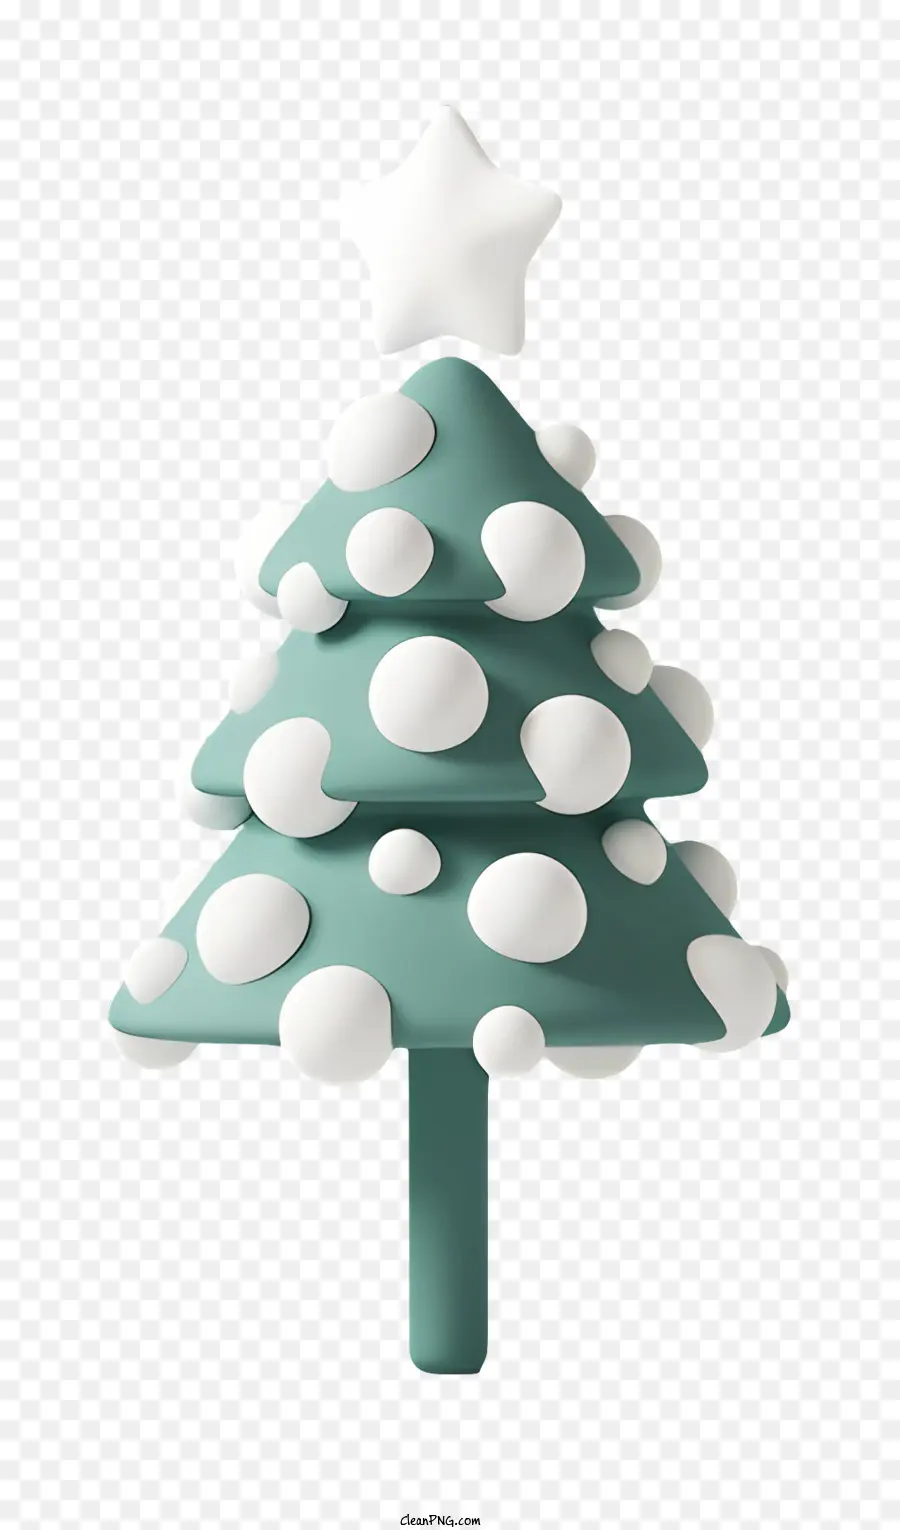 Weihnachtsbaum - Kleiner grüner Weihnachtsbaum mit Schneeflocken und Stern